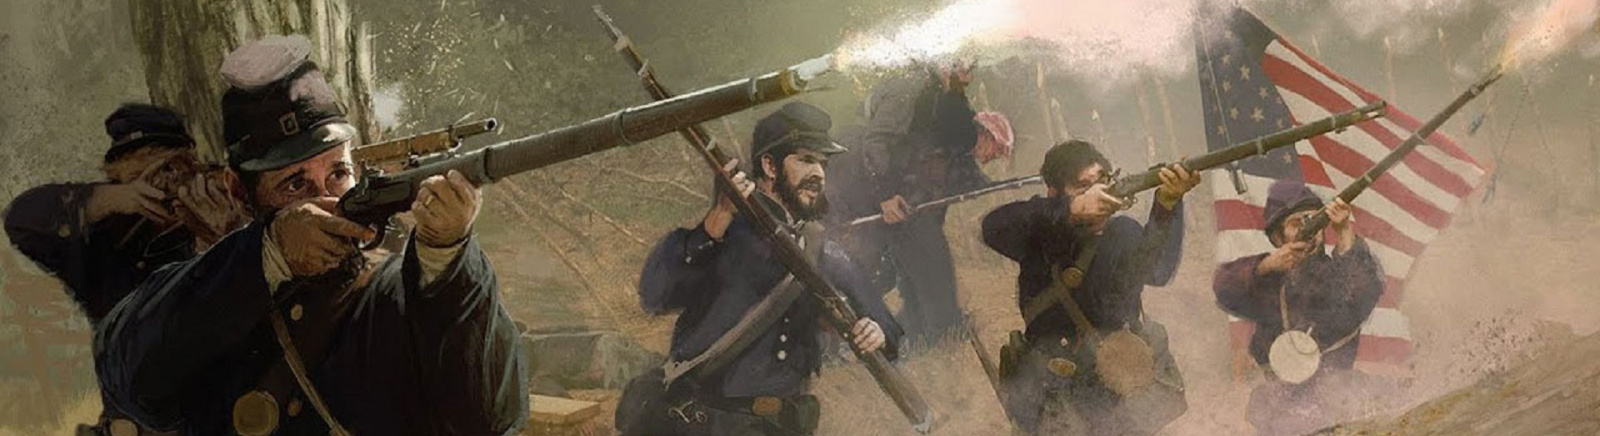 Дата выхода Grand Tactician: The Civil War (1861-1865)  на PC в России и во всем мире